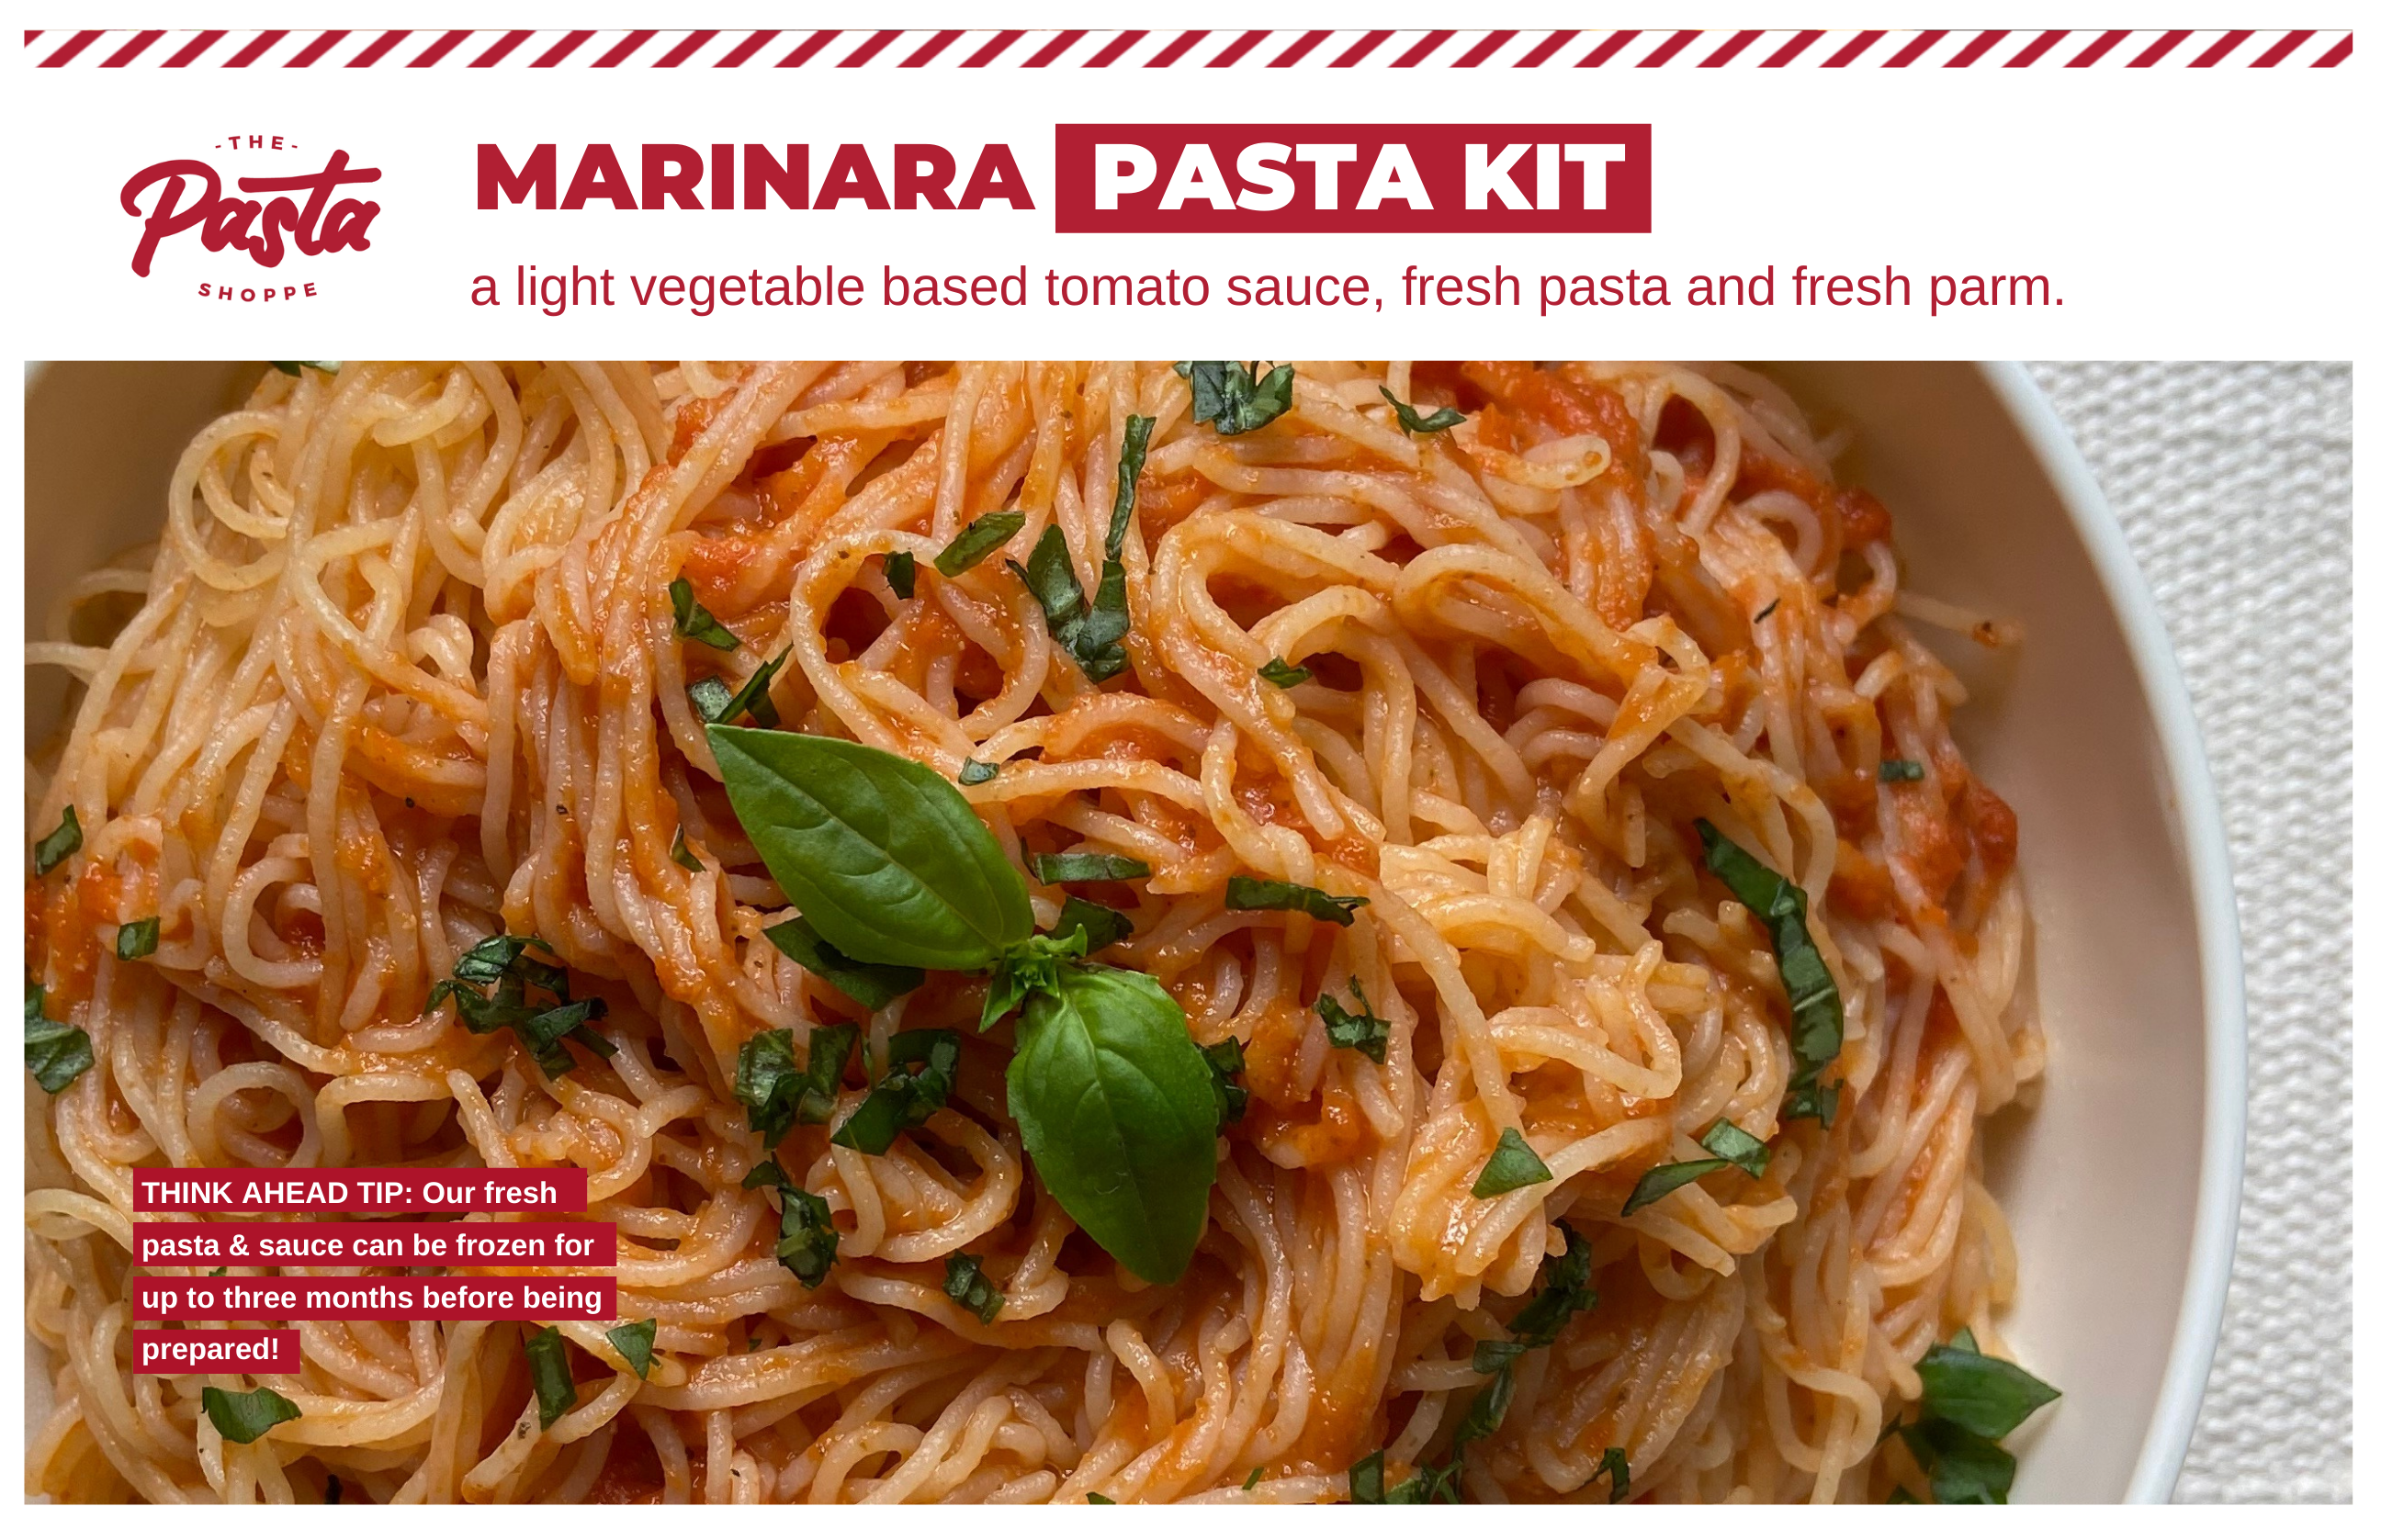 Marinara Pasta Kit - ThePastaShoppe 